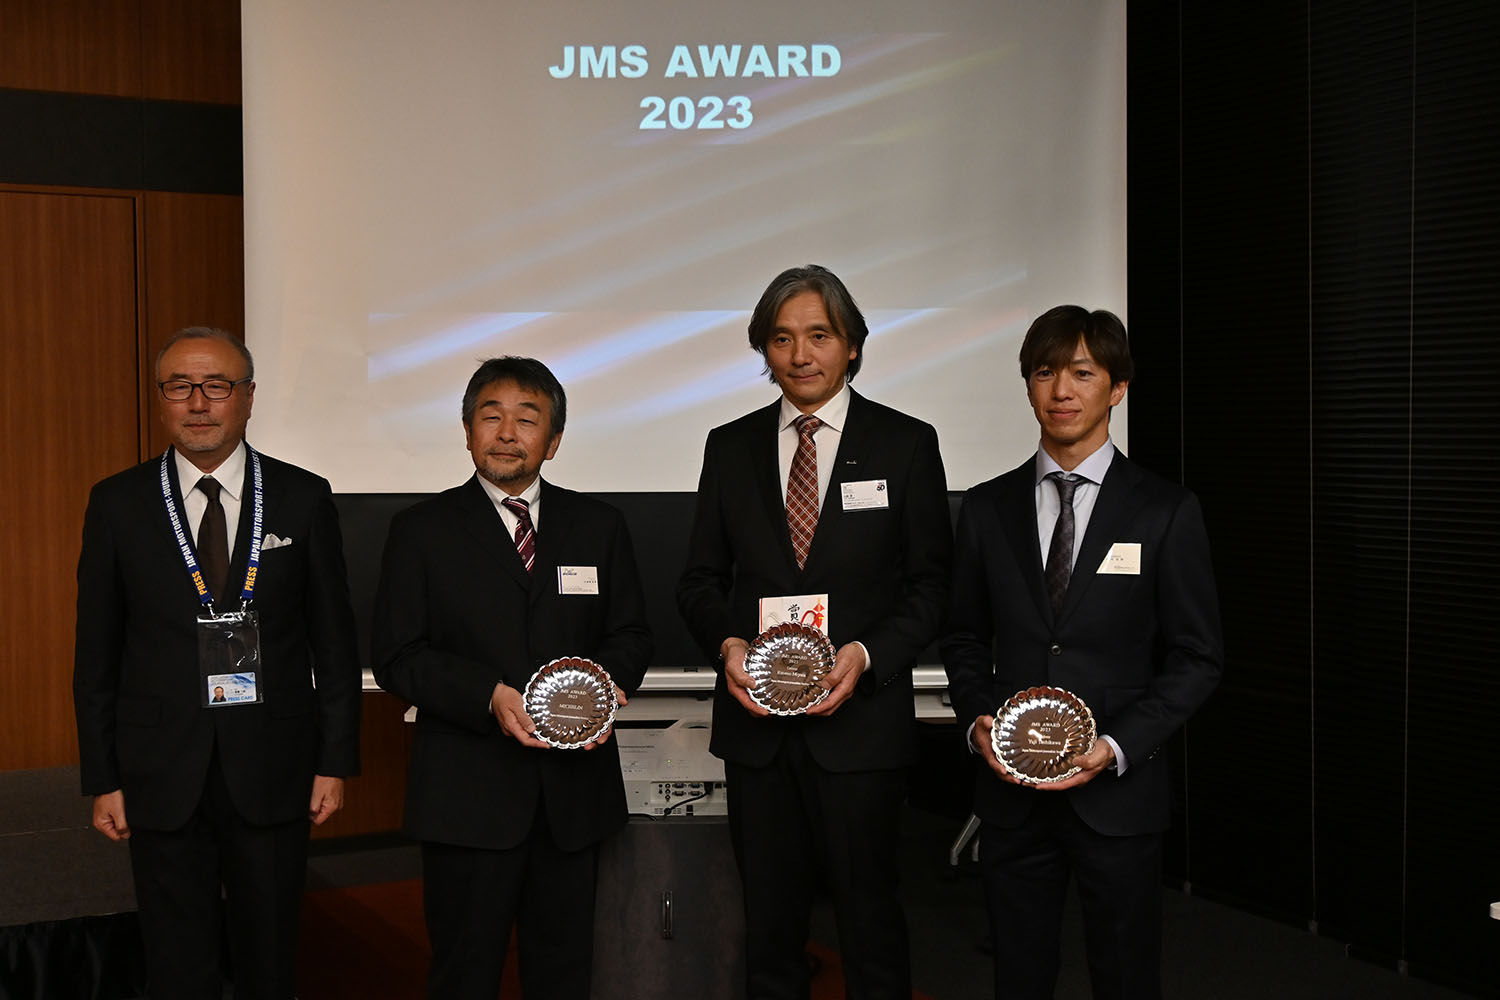 2023年JMSアワードは国内最高峰カテゴリー2冠達成の宮田莉朋が受賞